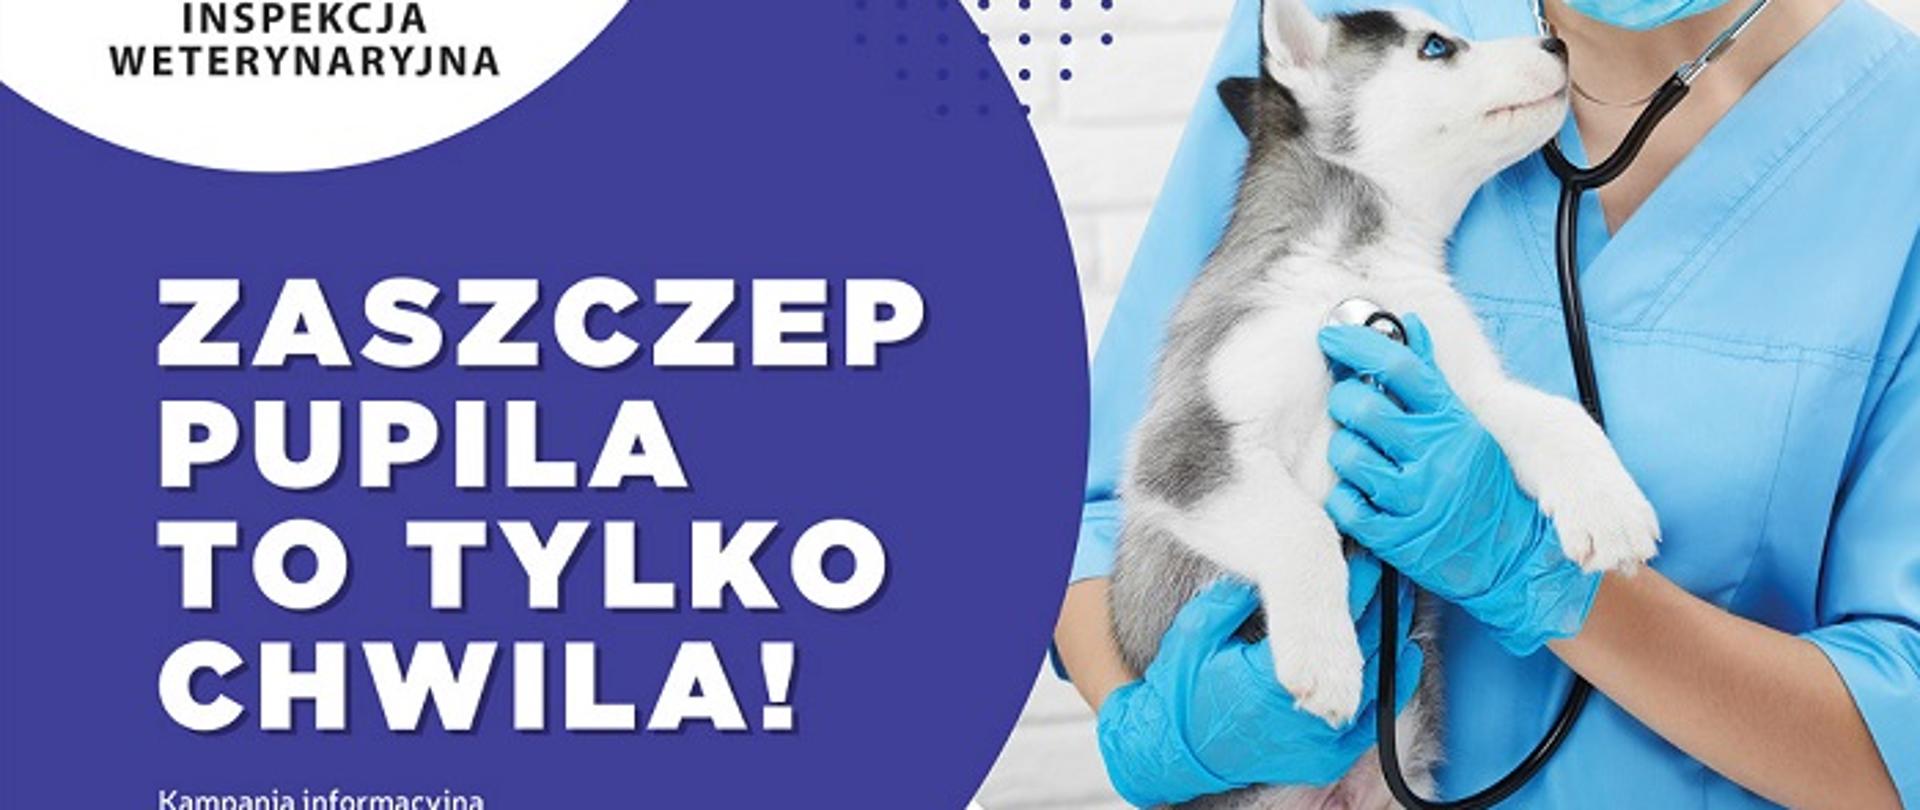 plakat informujący o obowiązku szczepienia zwierząt domowych